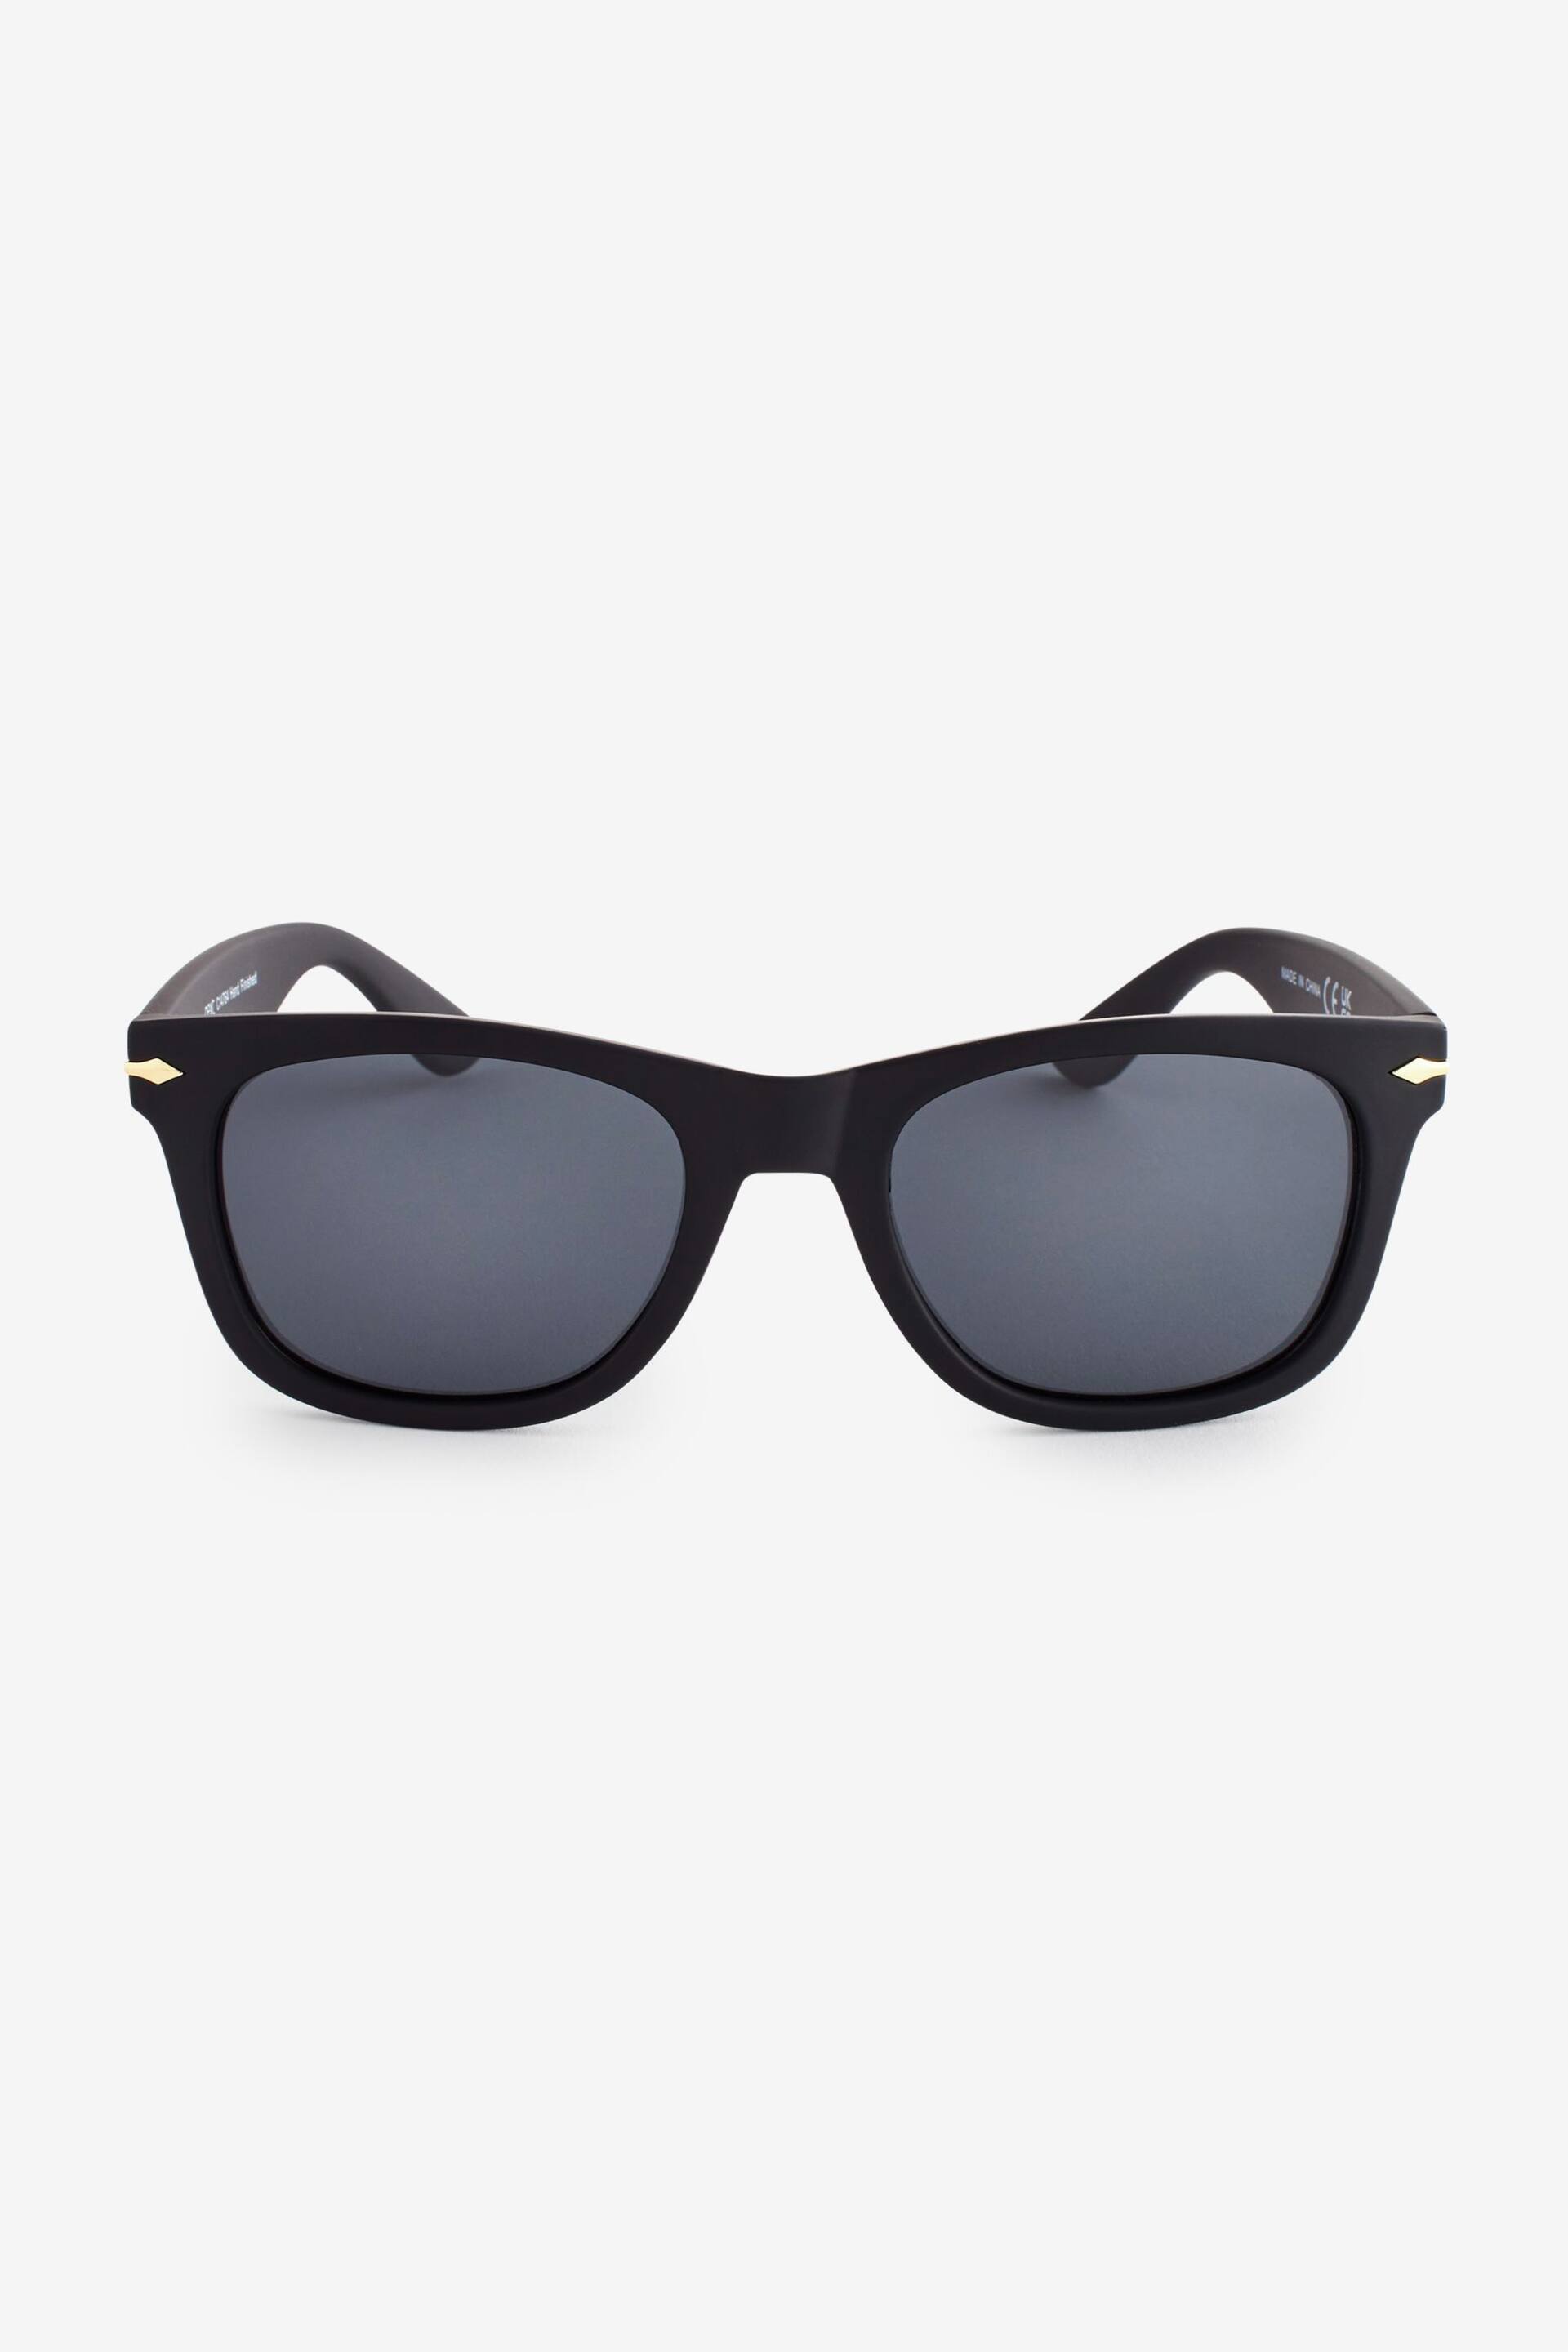 Black Square Polarised Sunglasses - Image 3 of 4